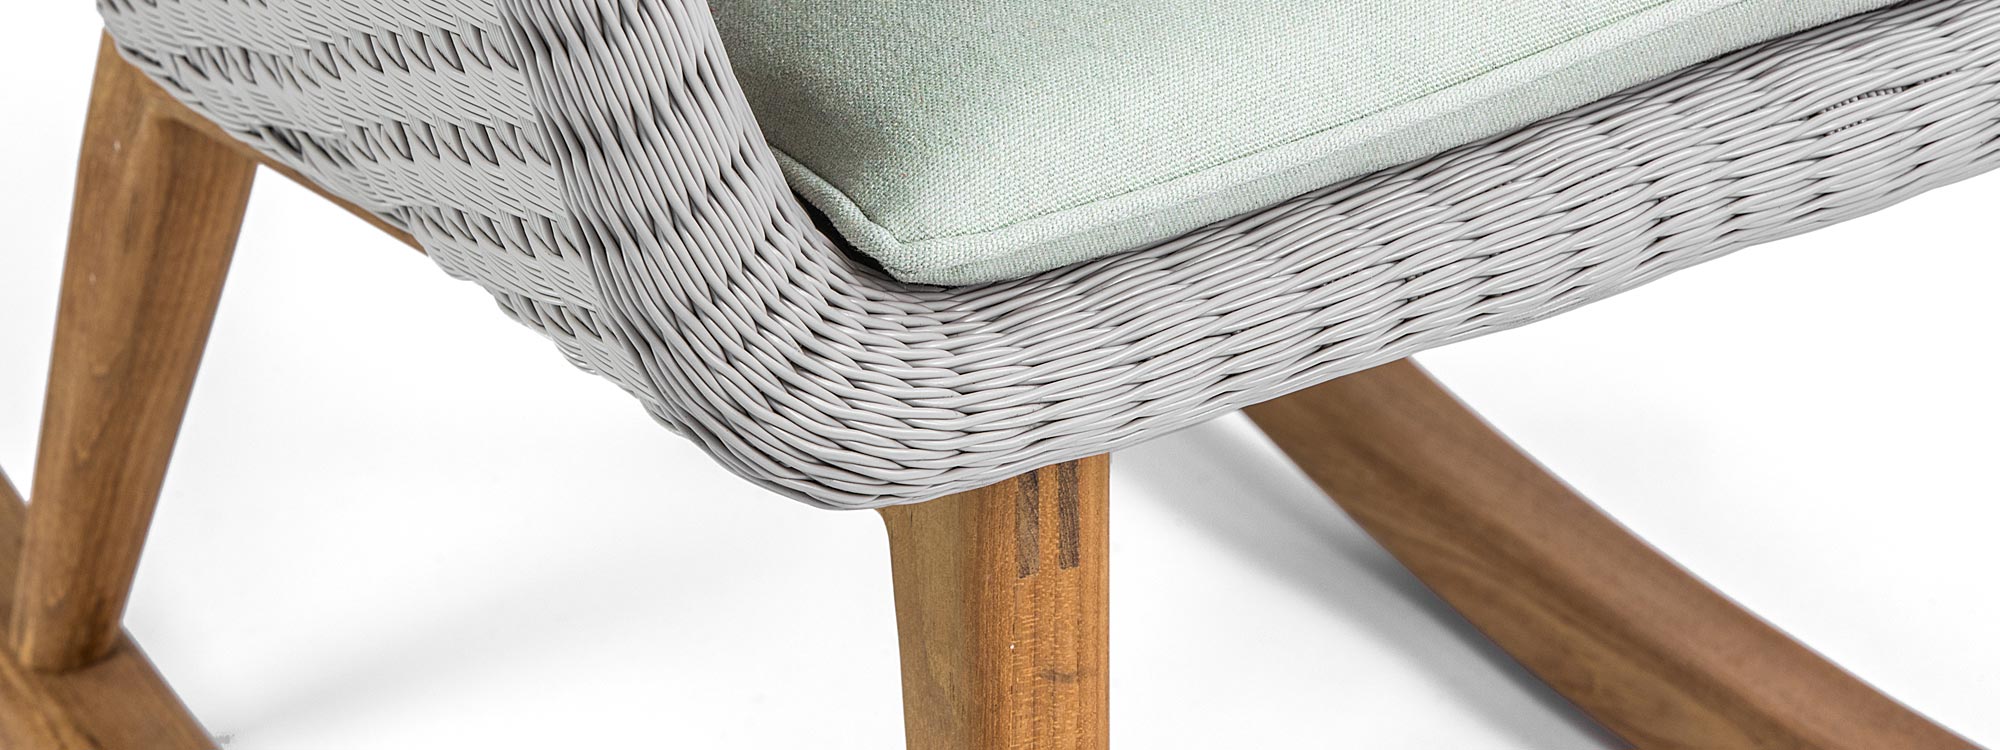 Shell Teak modern garden rocking chair & designer outdoor rocker in weather-proof furniture materials by FueraDentro modern garden furniture